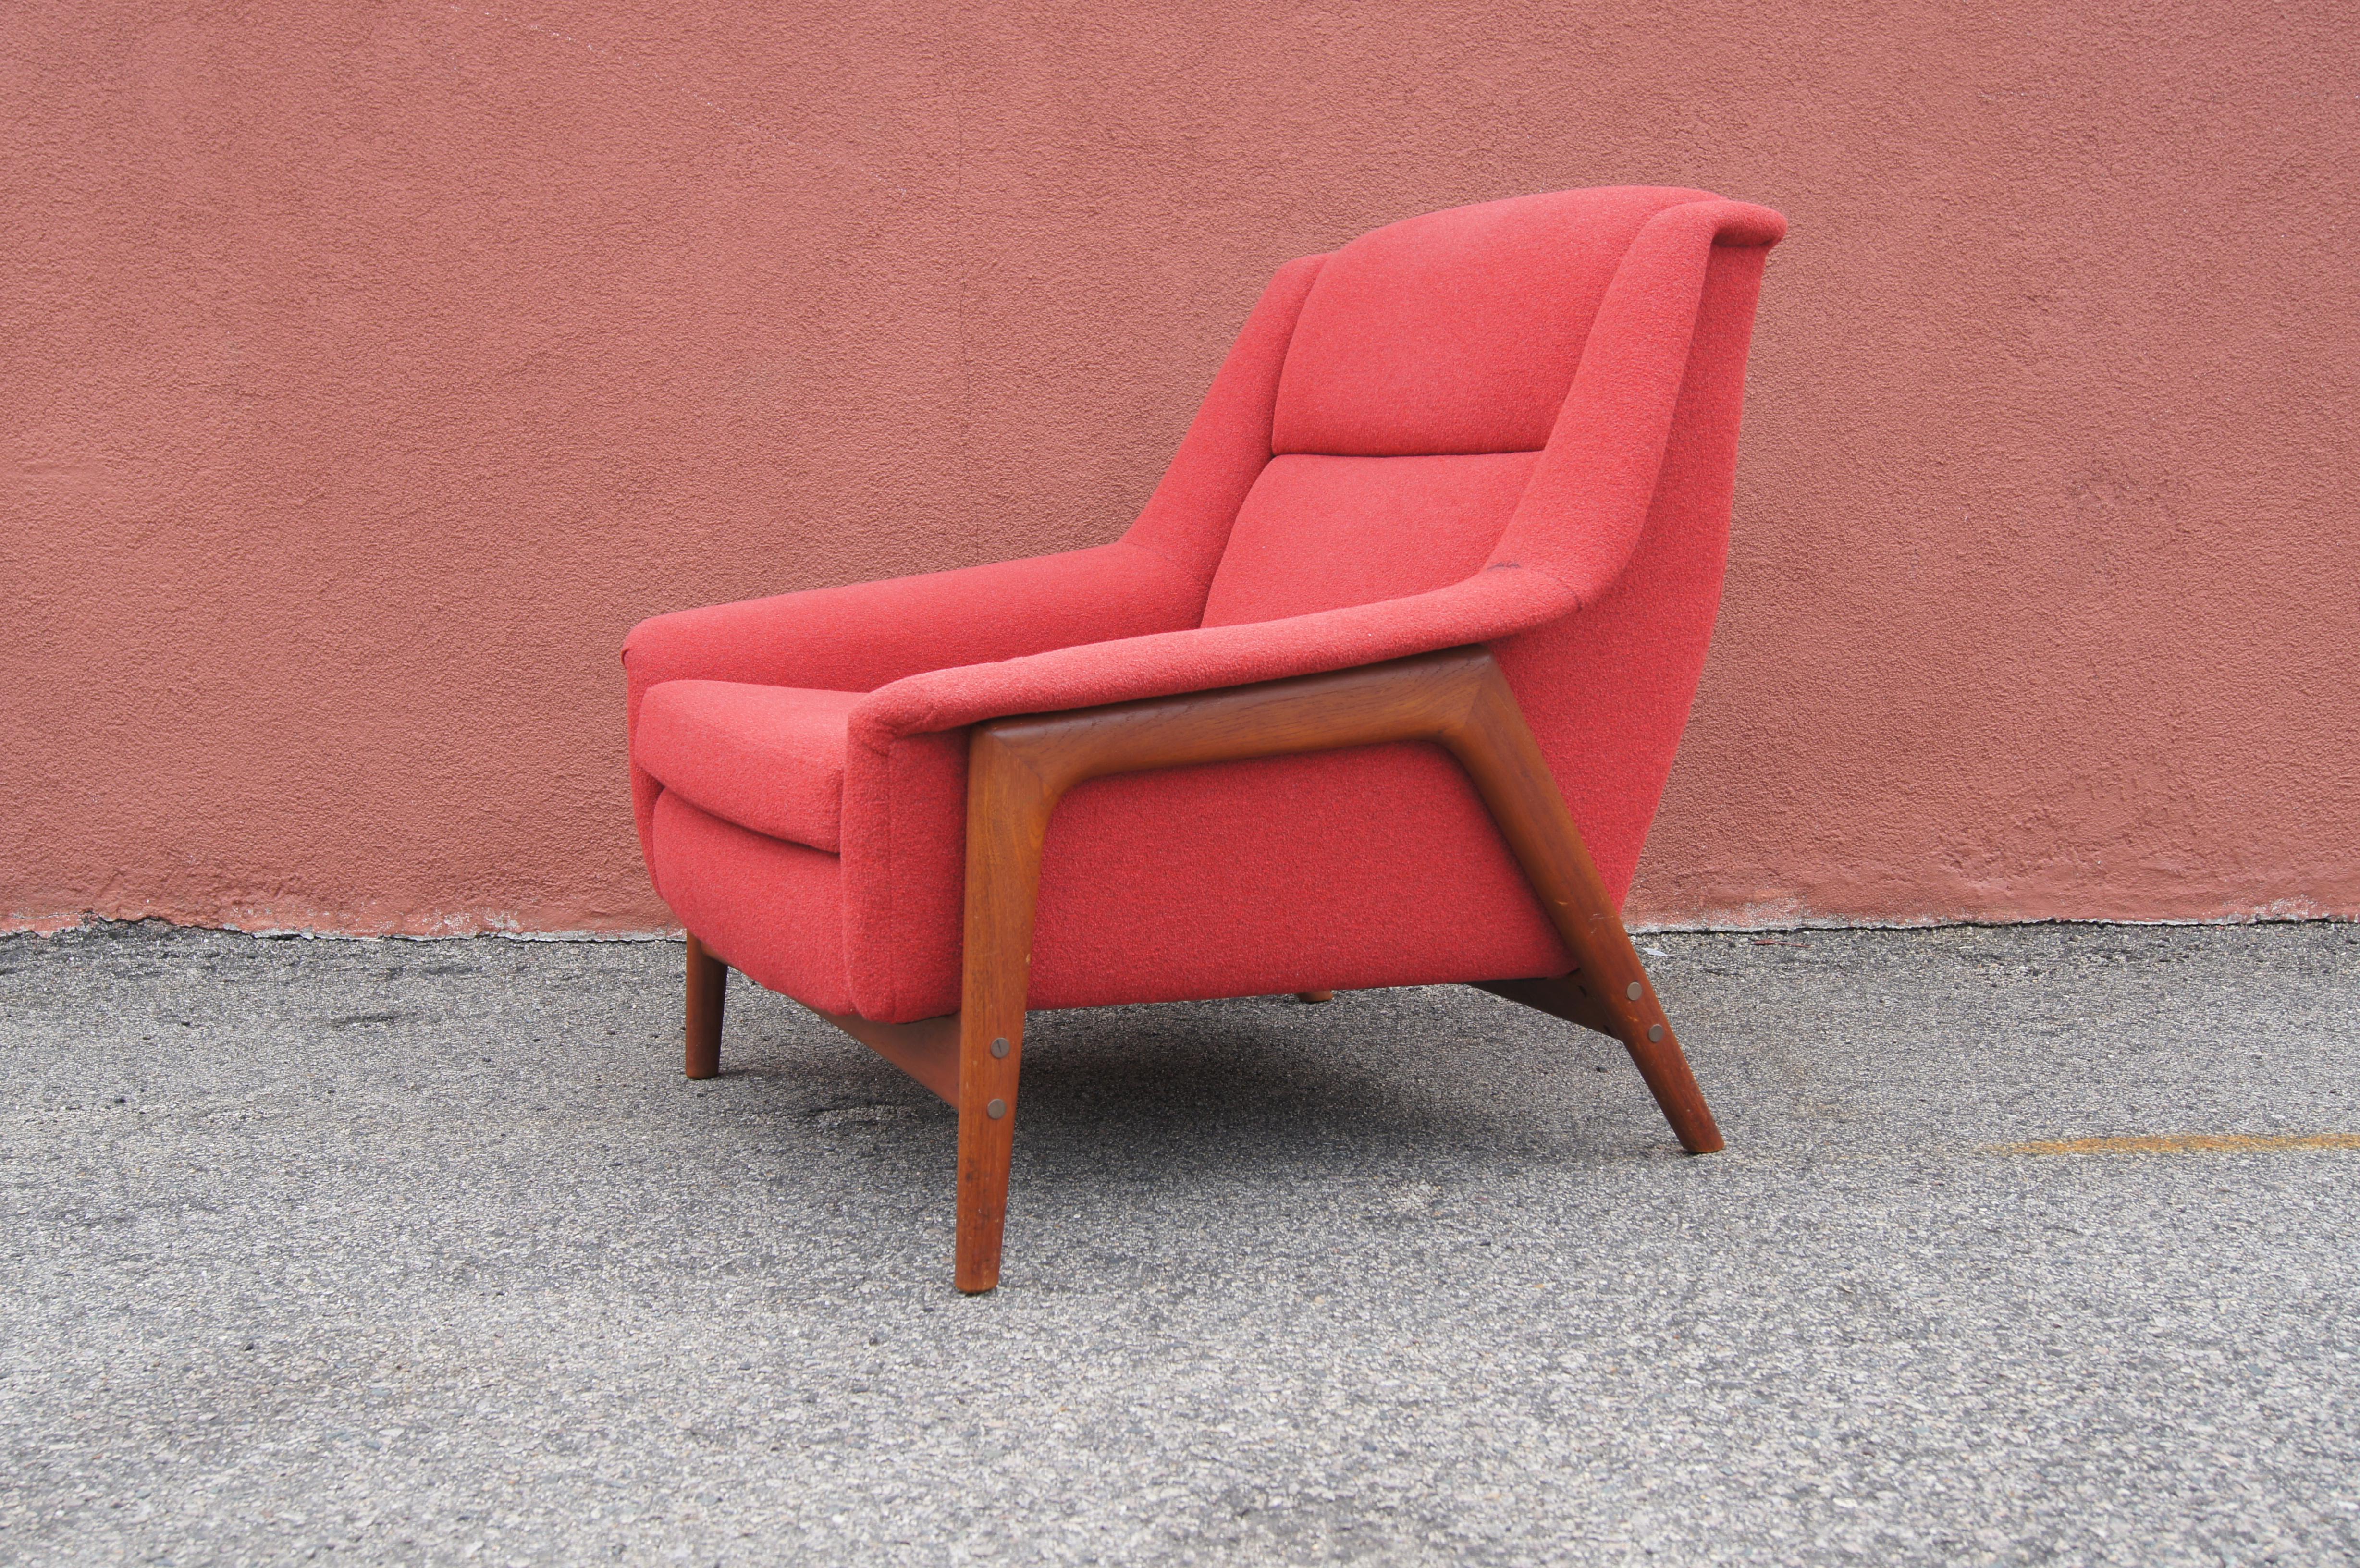 Conçue par Folke Ohlsson et fabriquée par Dux, cette chaise de salon The Scandinavian Modern se caractérise par une structure en teck apparent et une assise profonde très confortable avec de larges accoudoirs.

À un moment donné, il a été